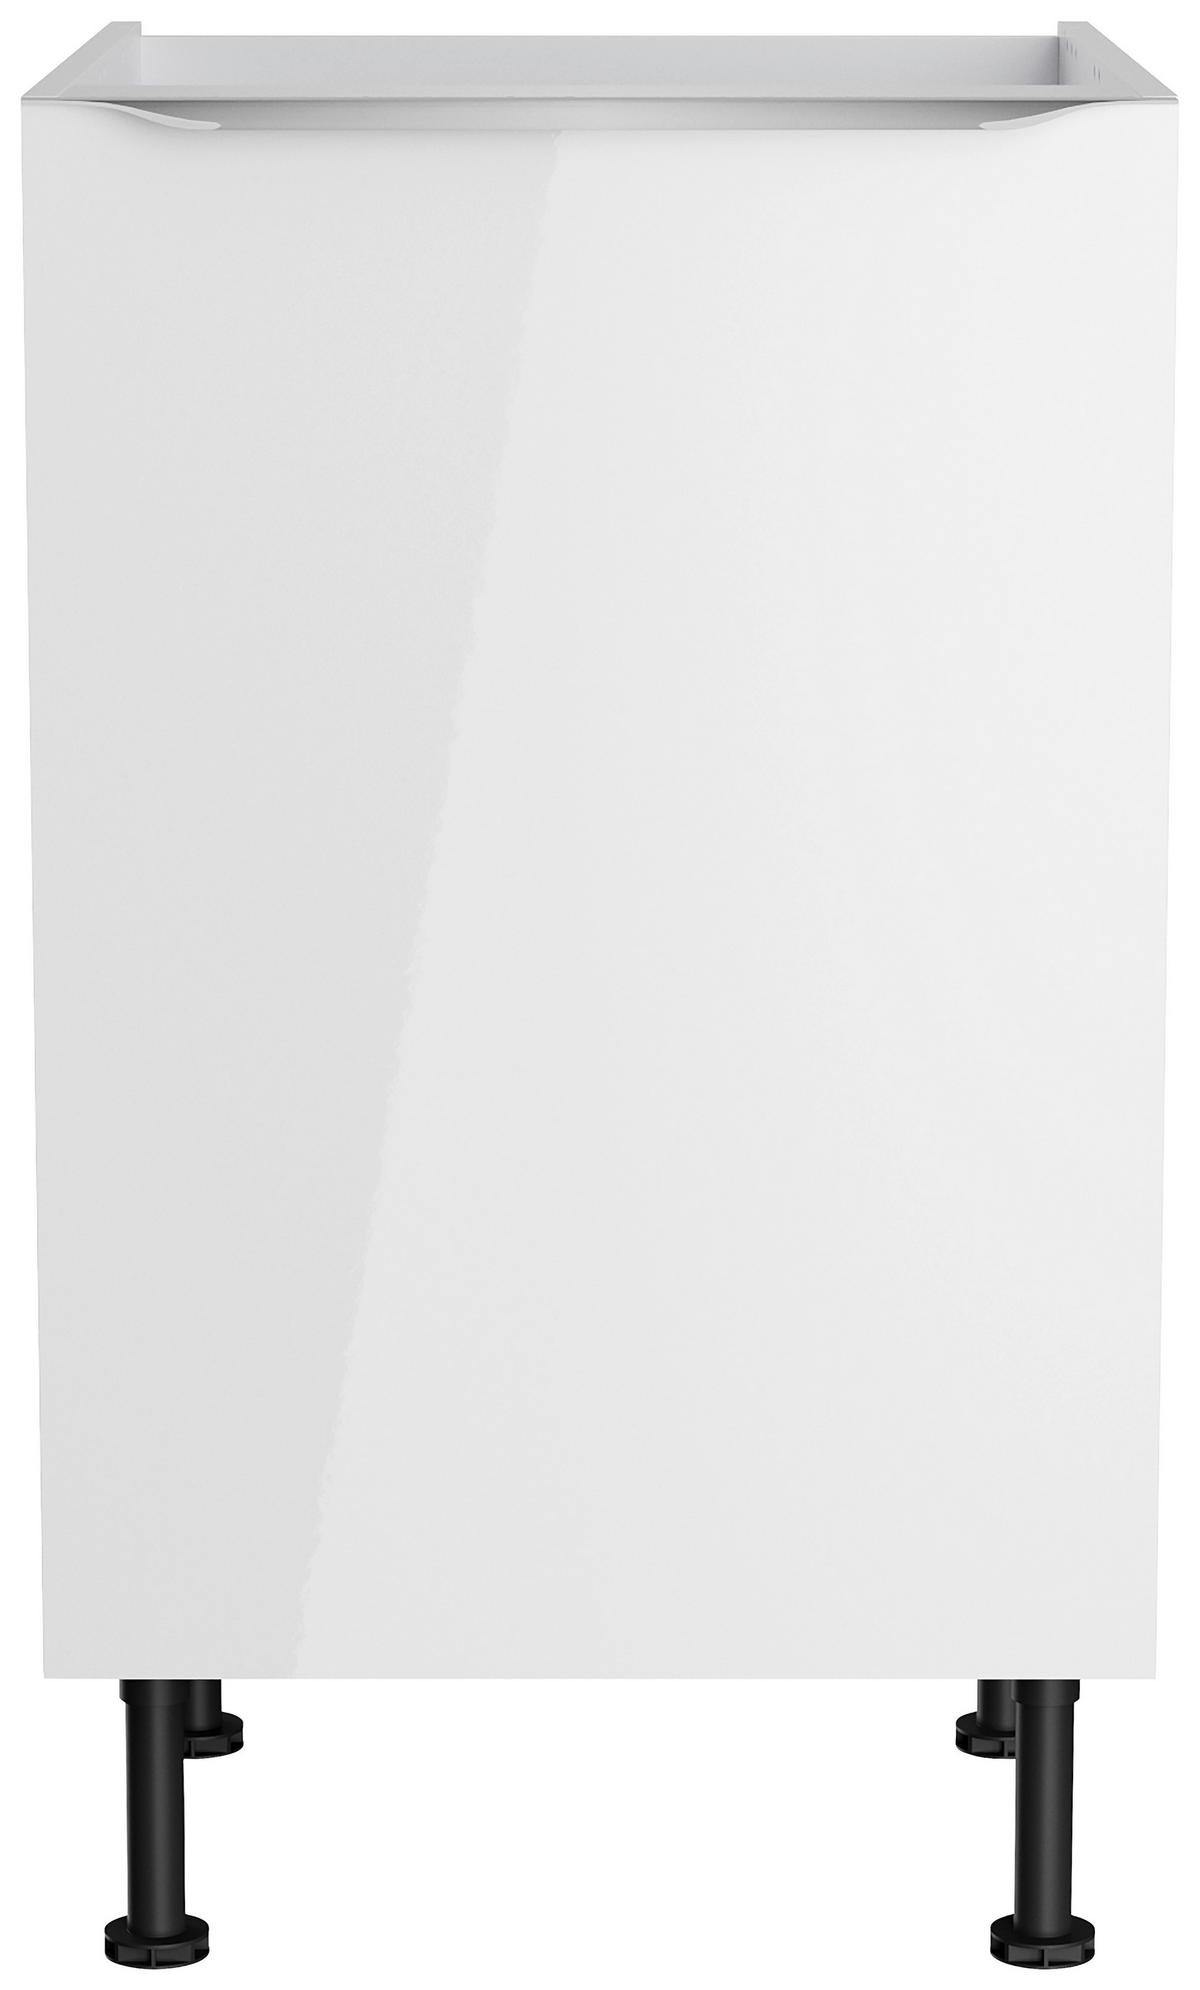 KÜCHENLEERBLOCK 270 cm   in Weiß, Weiß Hochglanz  - Edelstahlfarben/Weiß Hochglanz, Basics, Holzwerkstoff/Metall (270cm) - Optifit